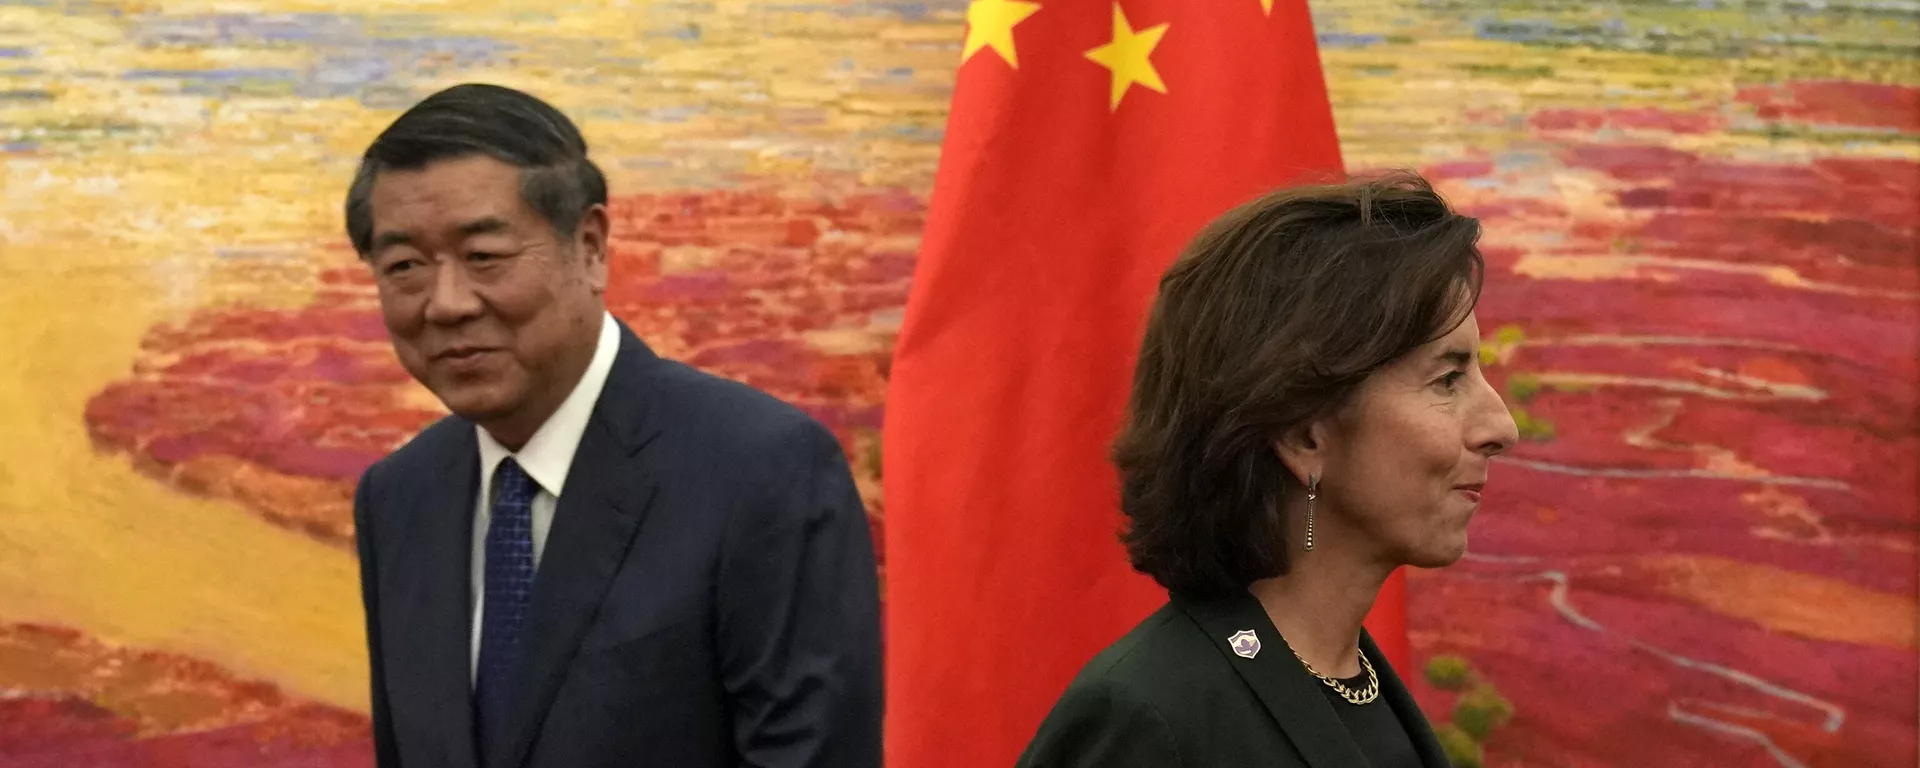 El viceprimer ministro chino, He Lifeng, y la secretaria de Comercio estadounidense, Gina Raimondo, durante una reunión en Pekín el 29 de agosto de 2023. - Sputnik Mundo, 1920, 29.08.2023